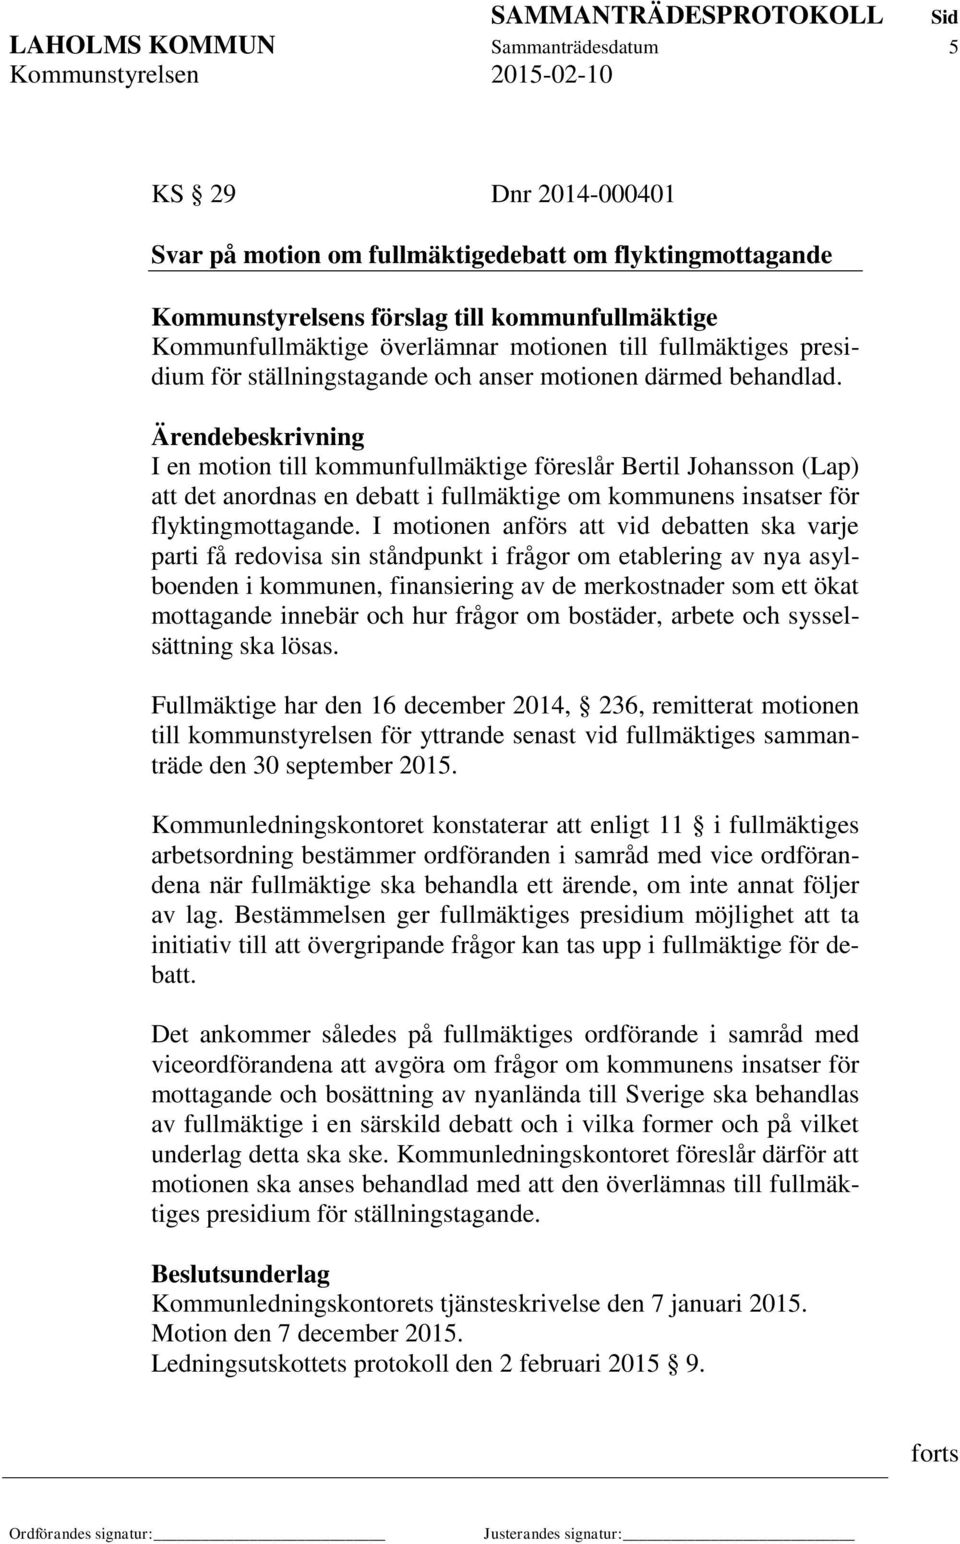 I en motion till kommunfullmäktige föreslår Bertil Johansson (Lap) att det anordnas en debatt i fullmäktige om kommunens insatser för flyktingmottagande.